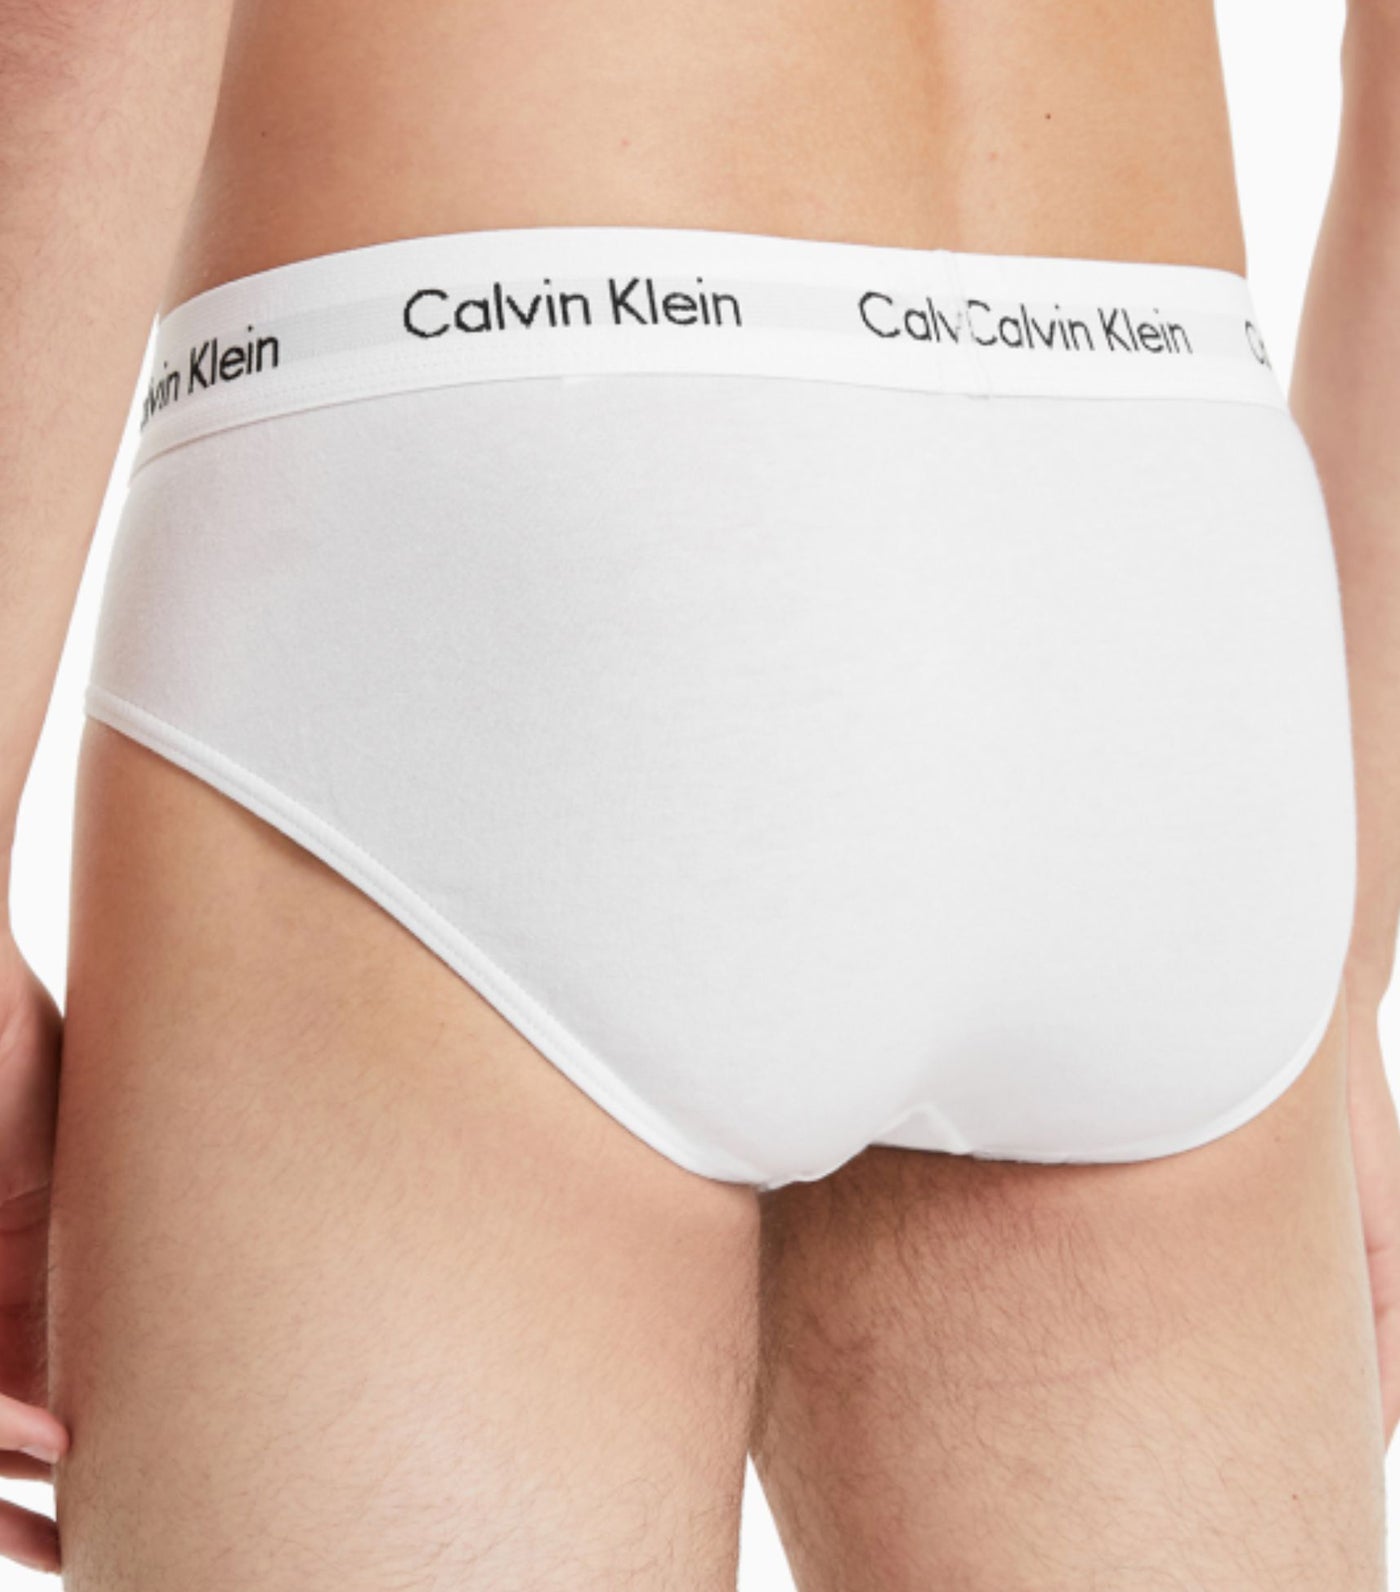 Calvin Klein 3-Pk. Hipster Underwear, Little & Big Girls